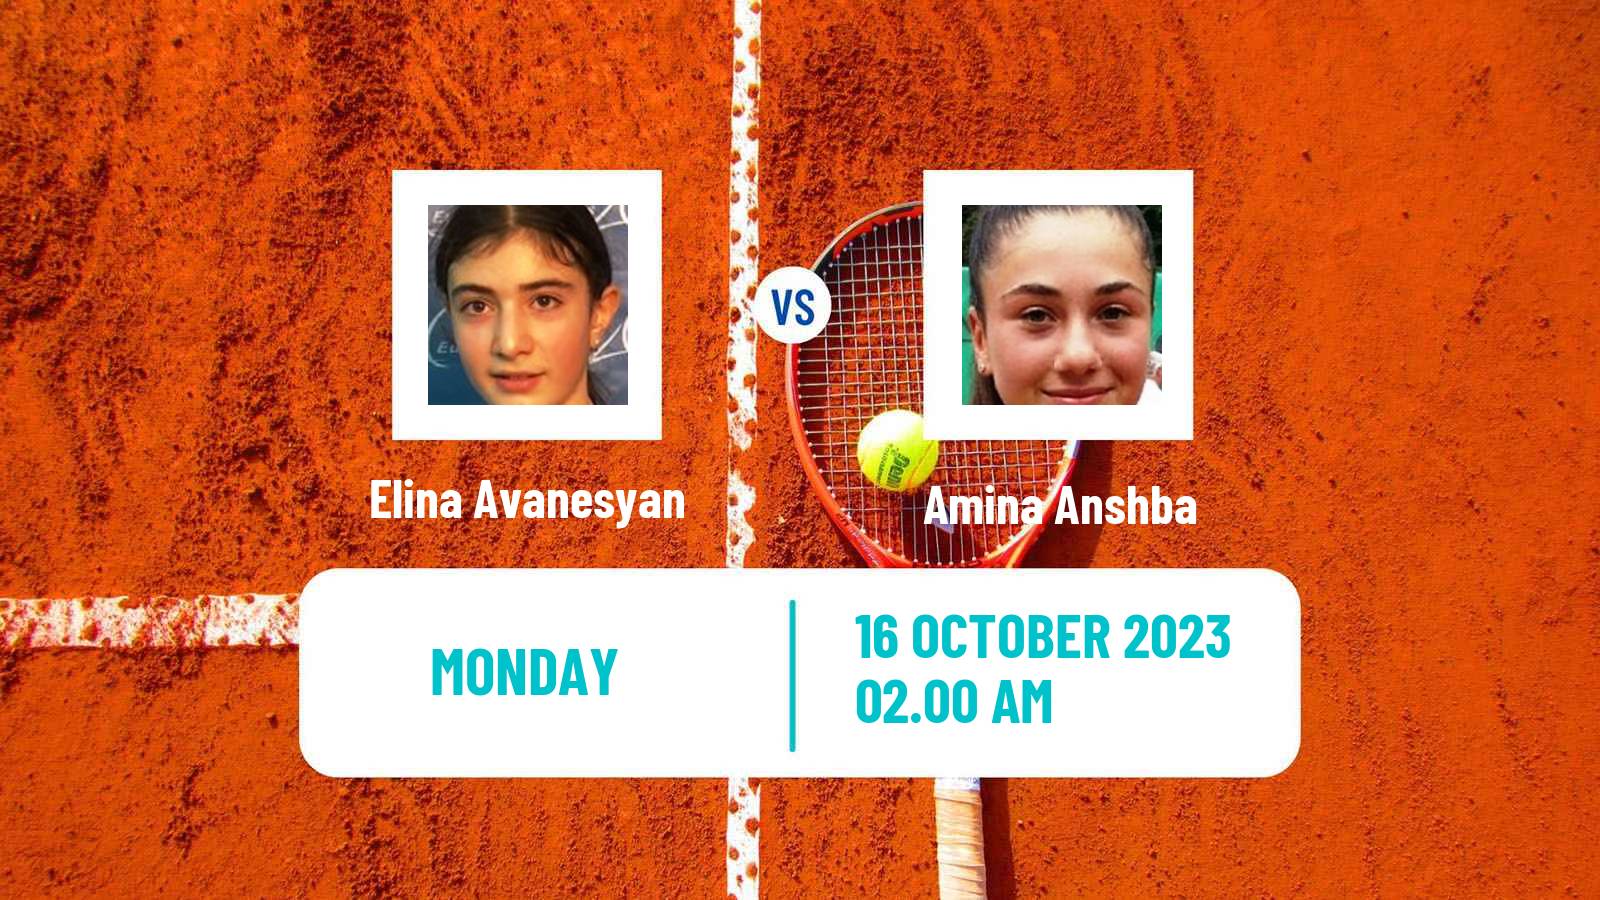 Tennis WTA Nanchang Elina Avanesyan - Amina Anshba